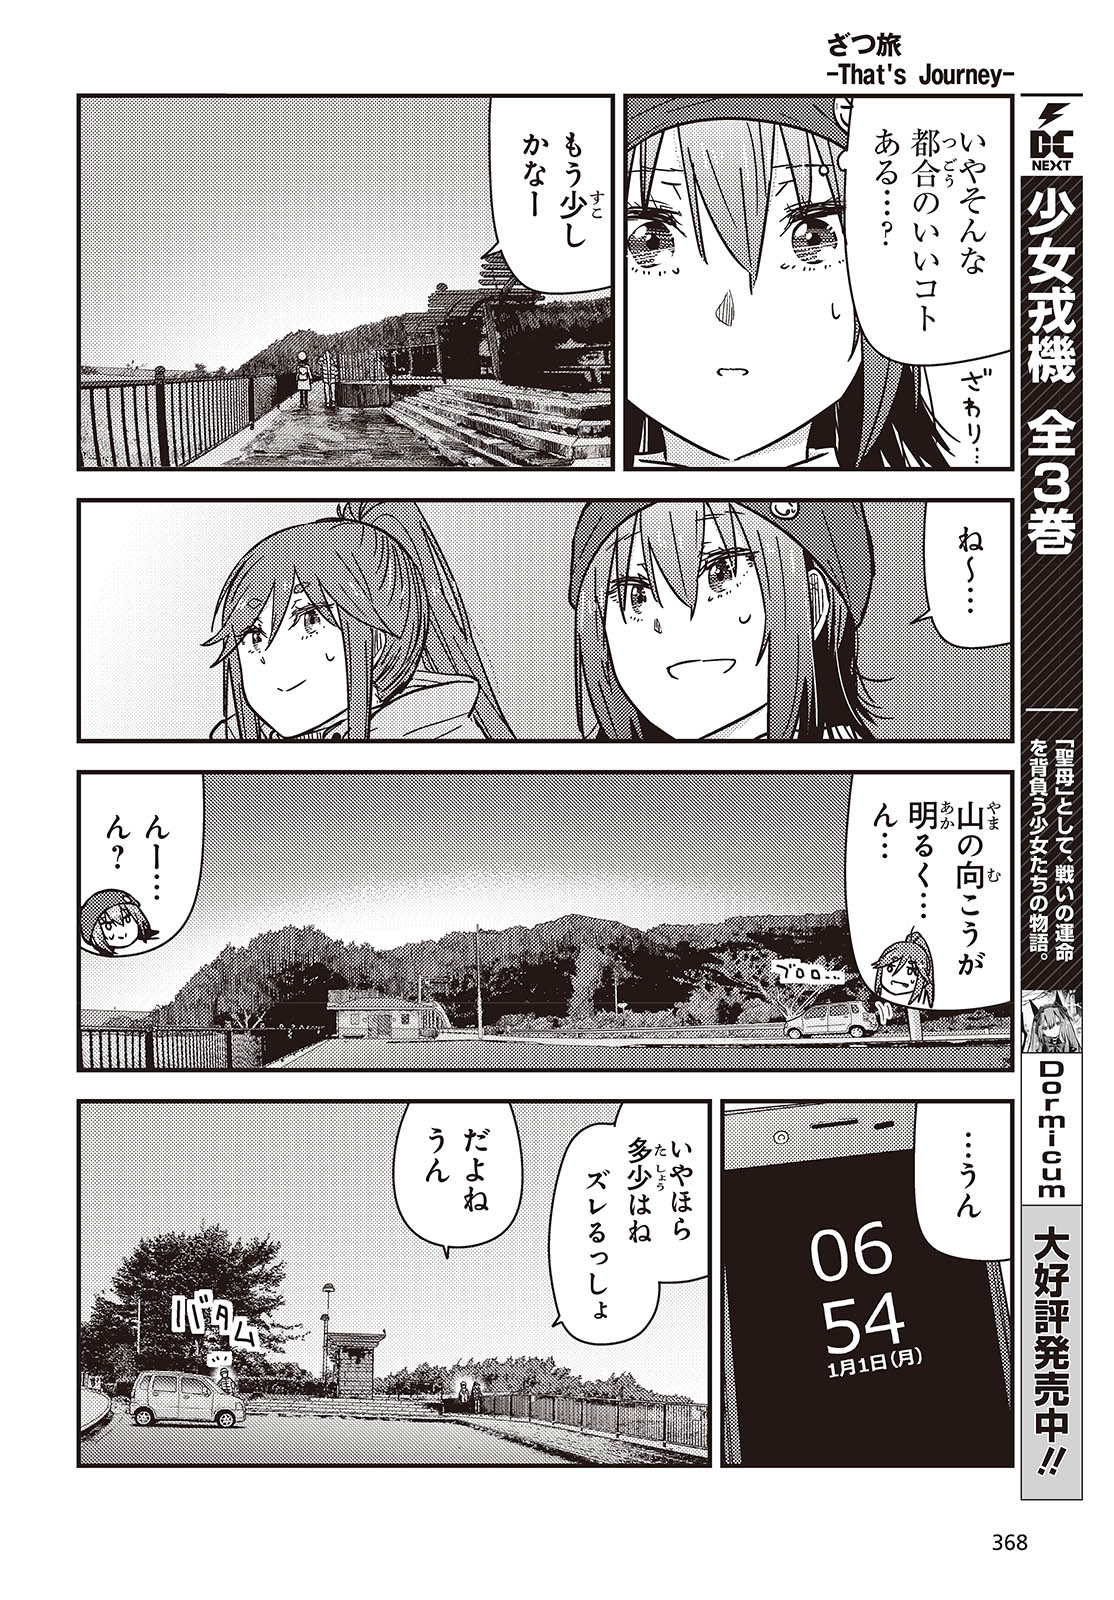 ざつ旅-That’s Journey- 第37話 - Page 12